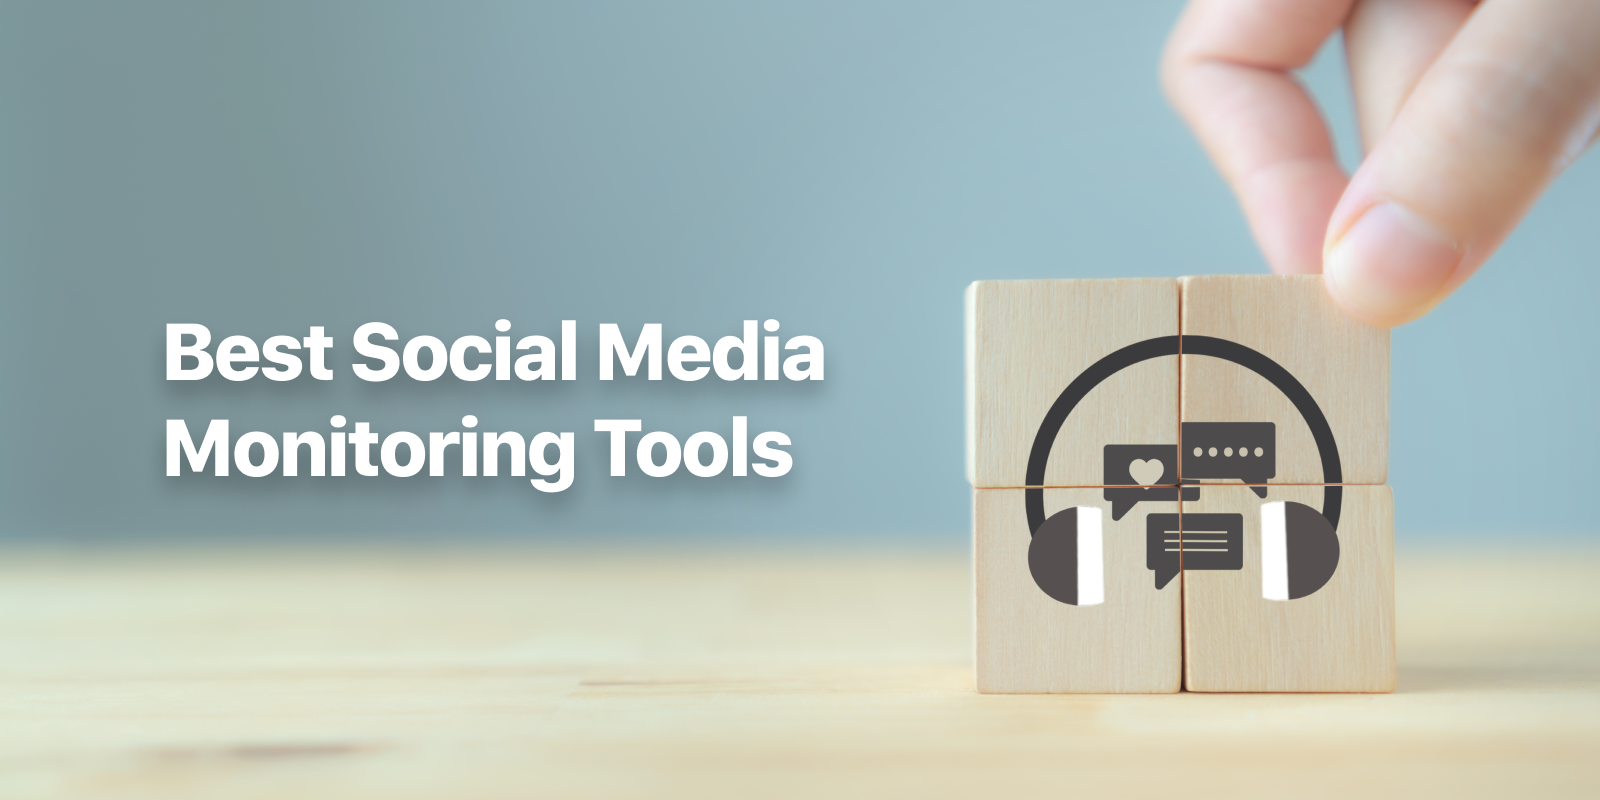 Free Social Monitoring Tools